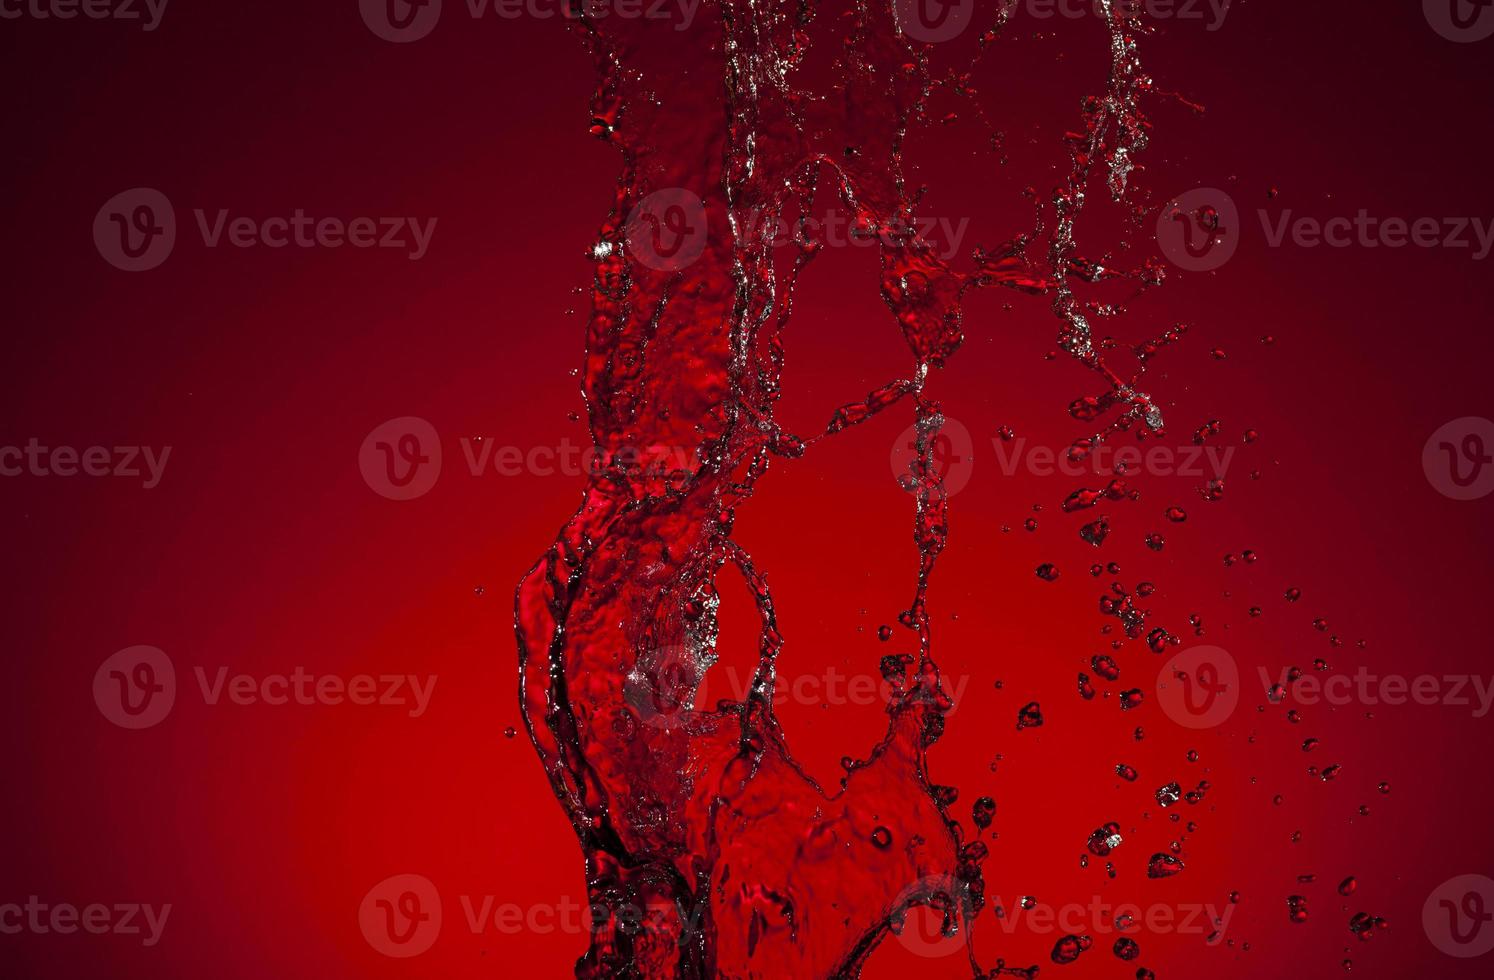 faller vatten på en röd bakgrund foto